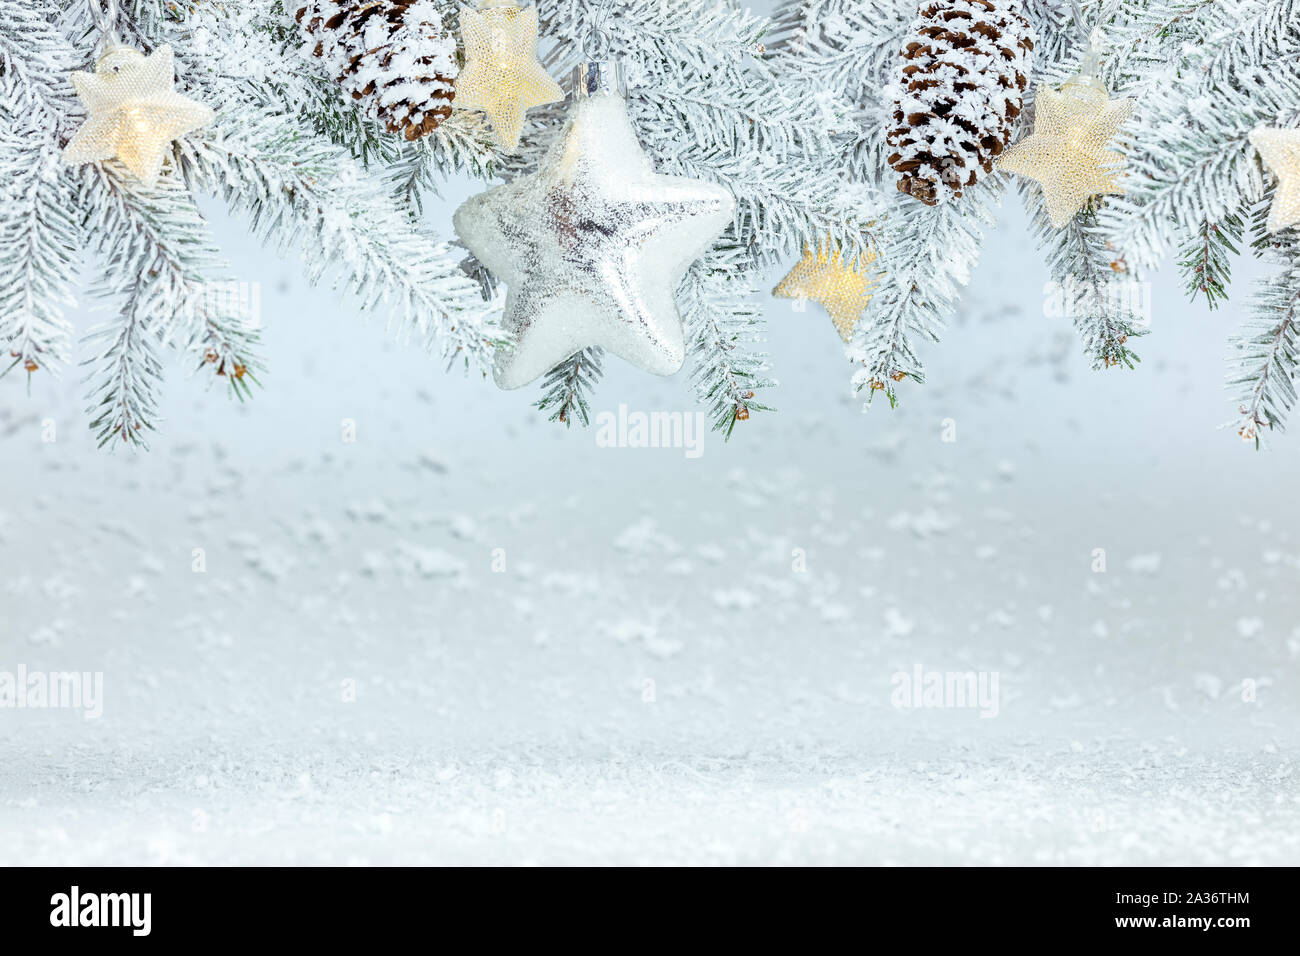 Snowy Hintergrund mit Fir Tree Branches, girlande Lichter und Silber Glas star Stockfoto